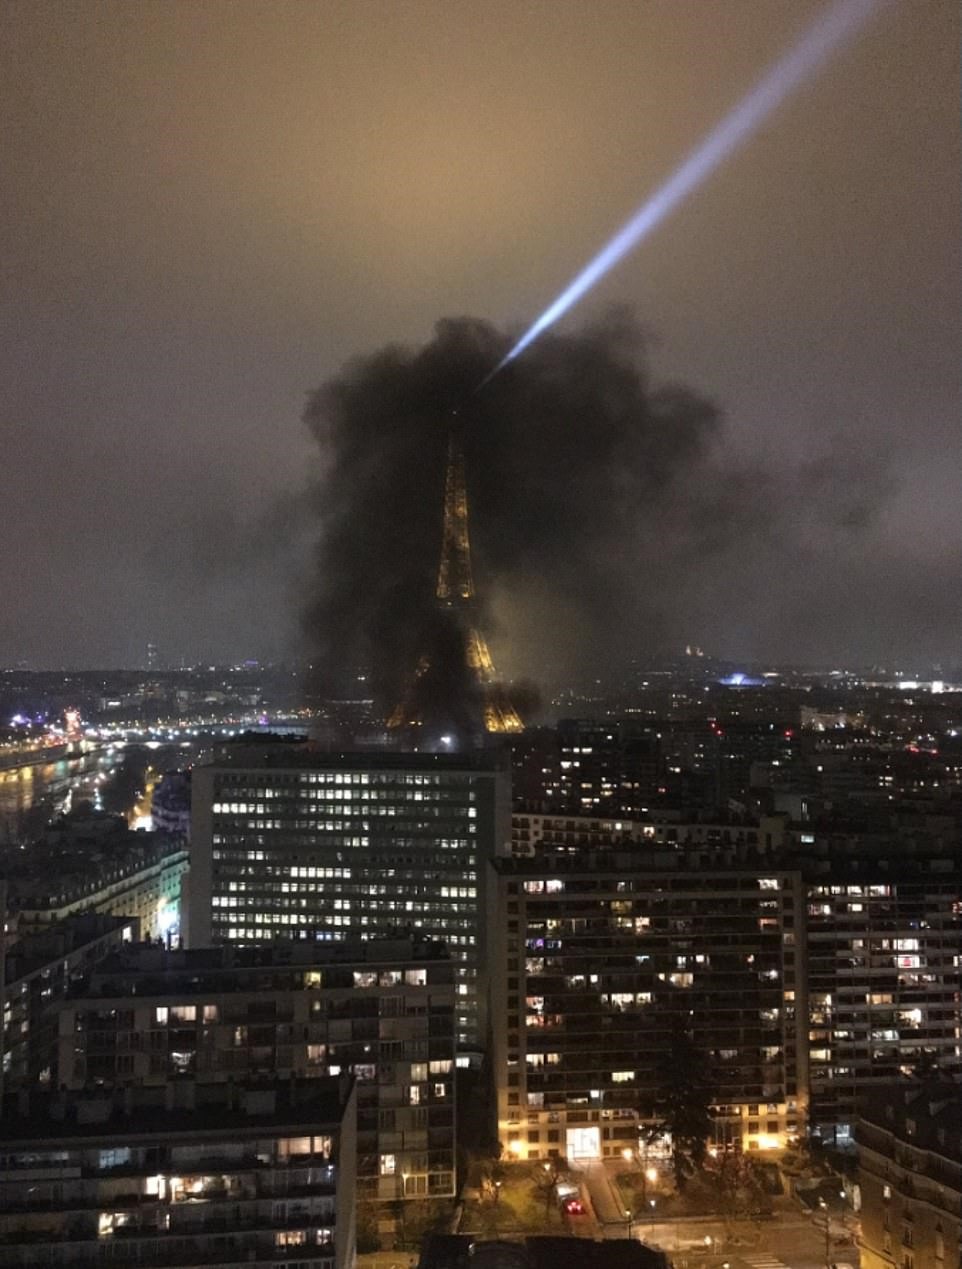 Các đường phố ở Paris đã bị đốt cháy trong các cuộc biểu tình 'áo vàng' ở Paris tối nay khiến tháp Eiffel bị che phủ trong làn khói đen dày đặc, sau khi cảnh sát chống bạo động bắn hơi cay vào đám đông vào hôm nay.